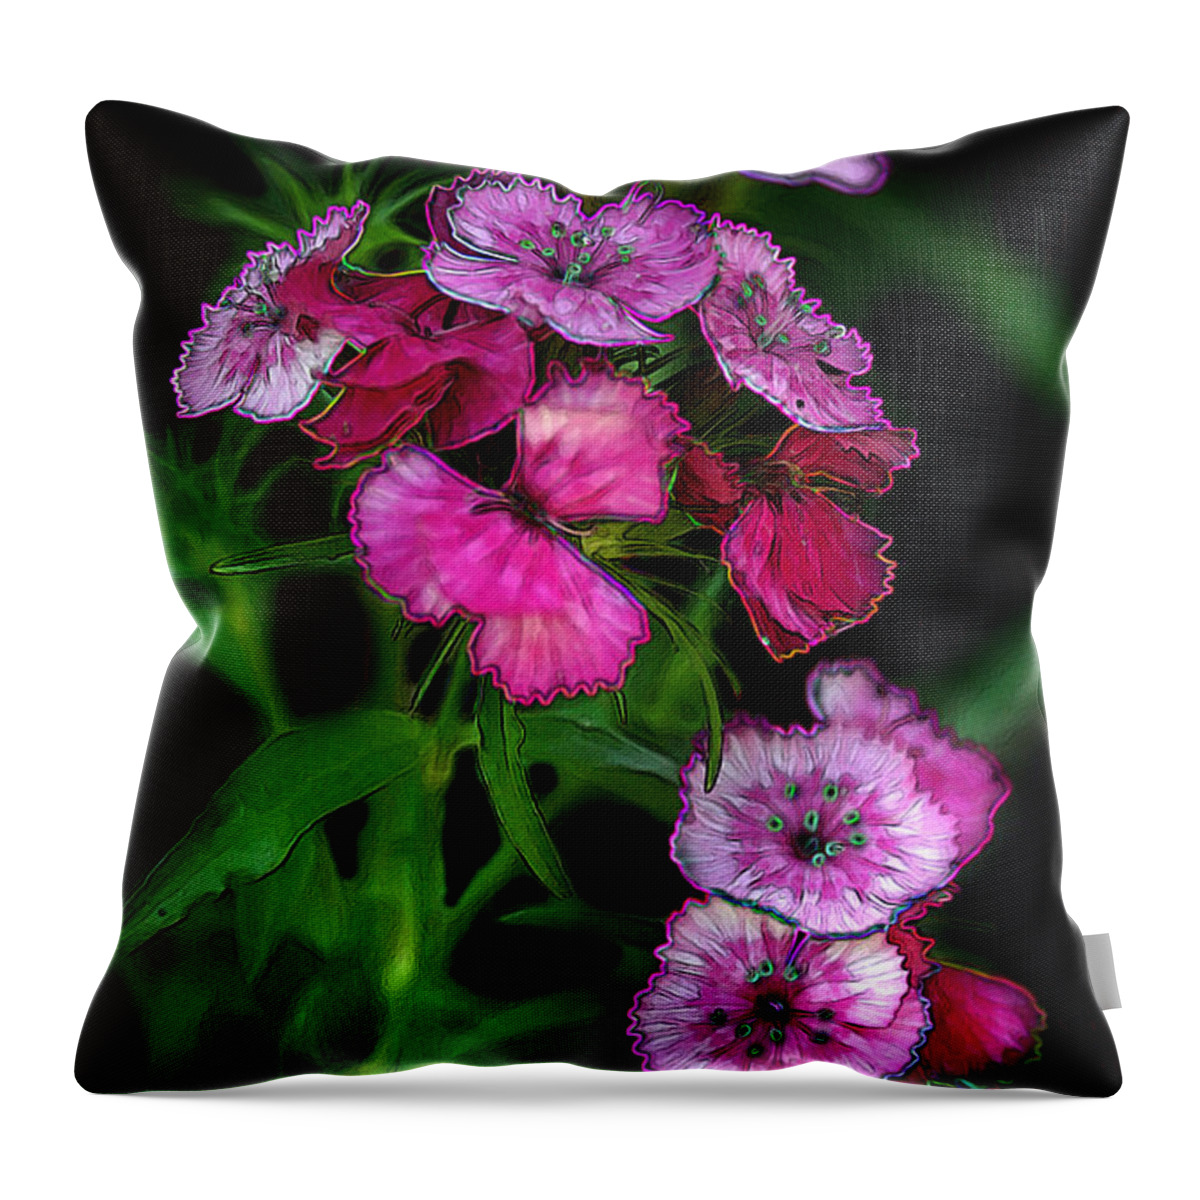 Butterfly Garden Throw Pillow featuring the digital art Butterfly Garden 02 - Carnations by E B Schmidt